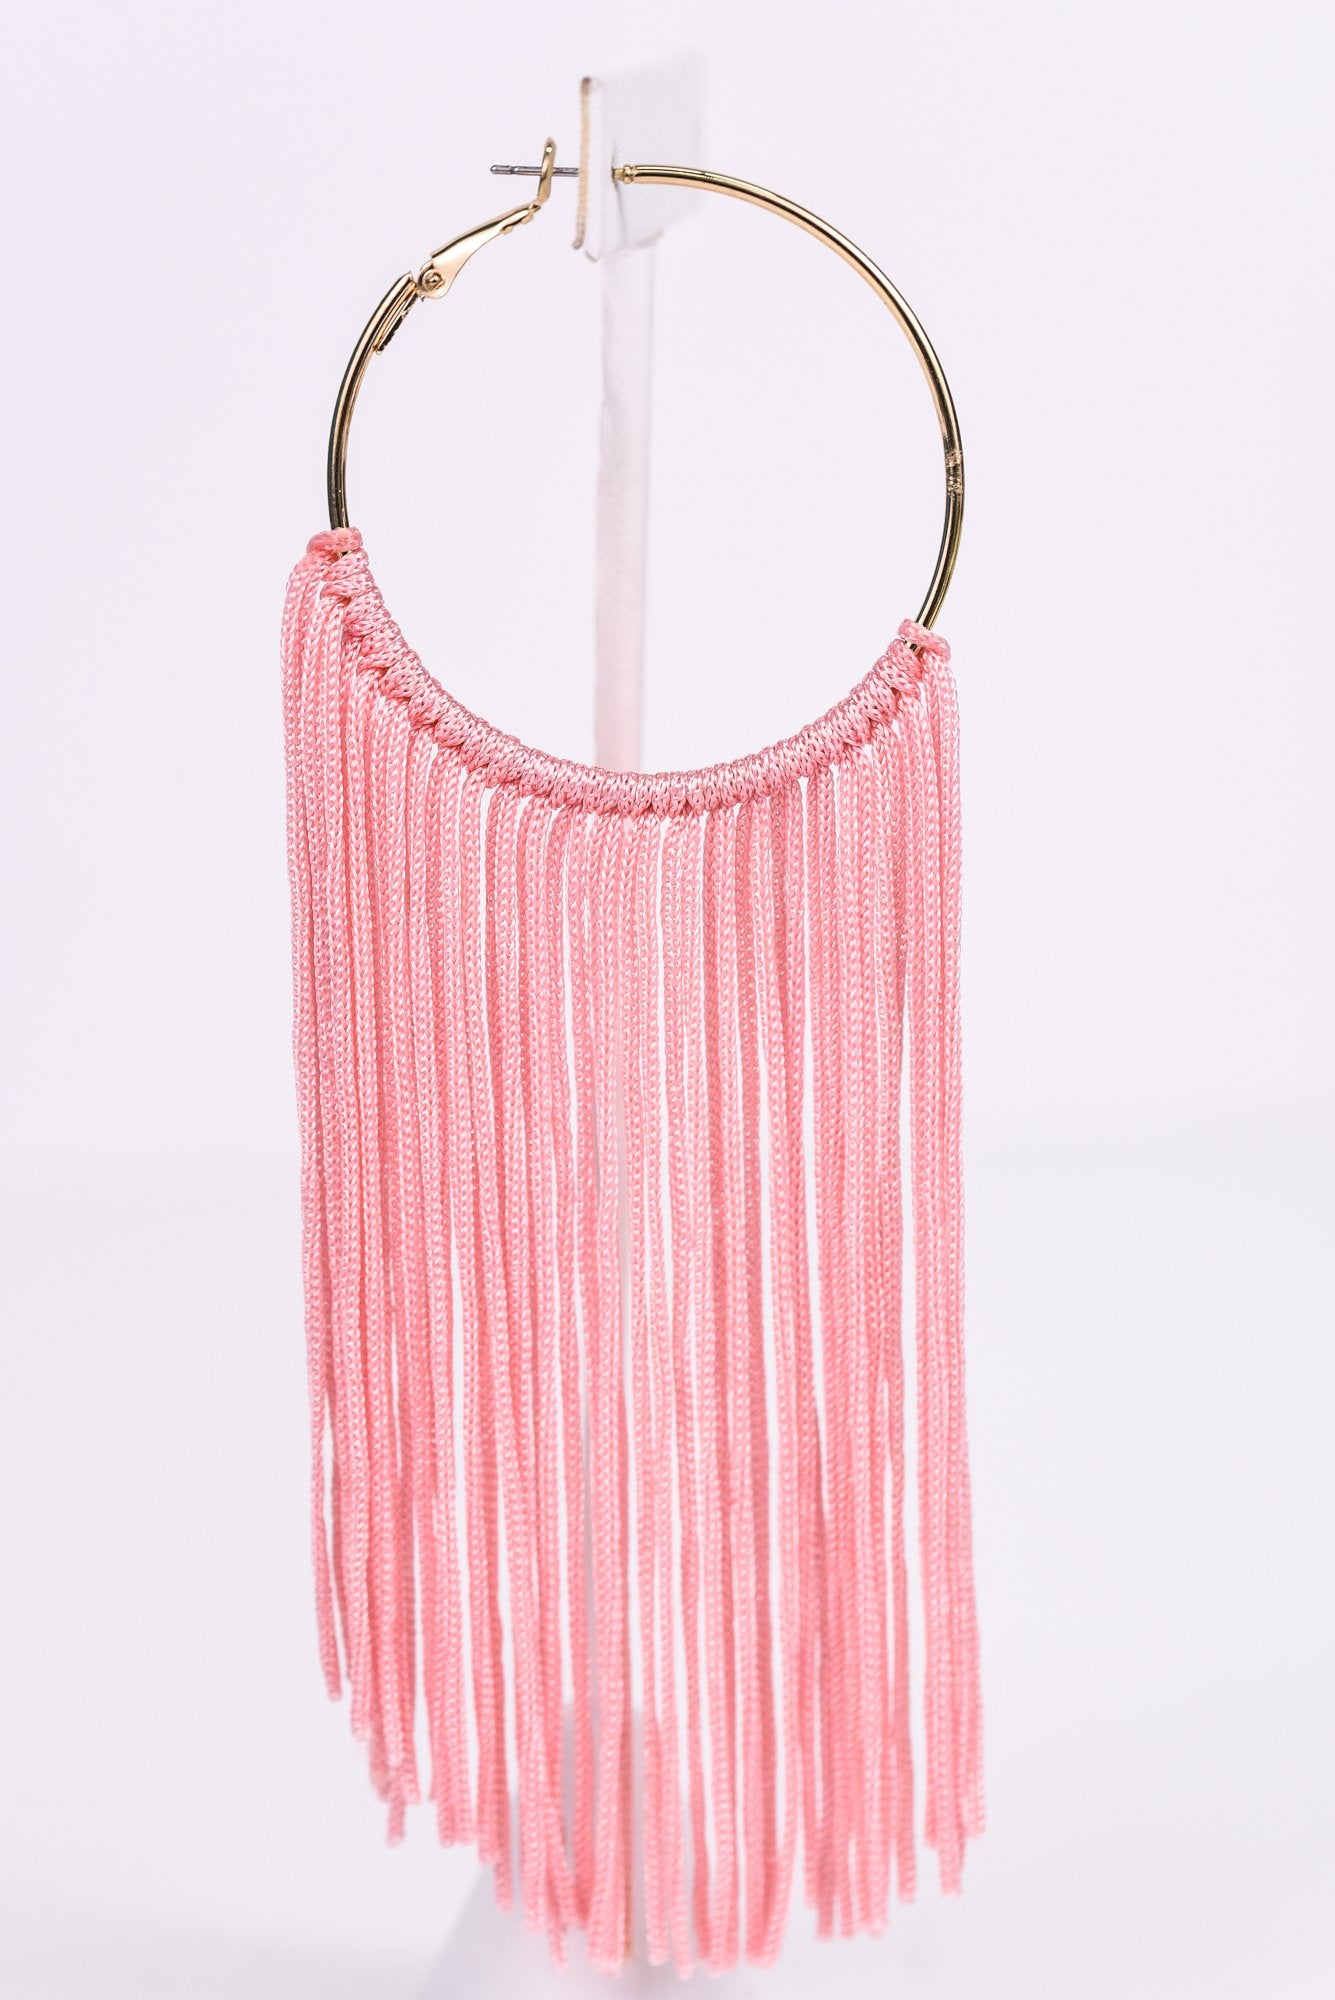 Long Pink Tassel Gold Hoop Earrings - EAR2796PK